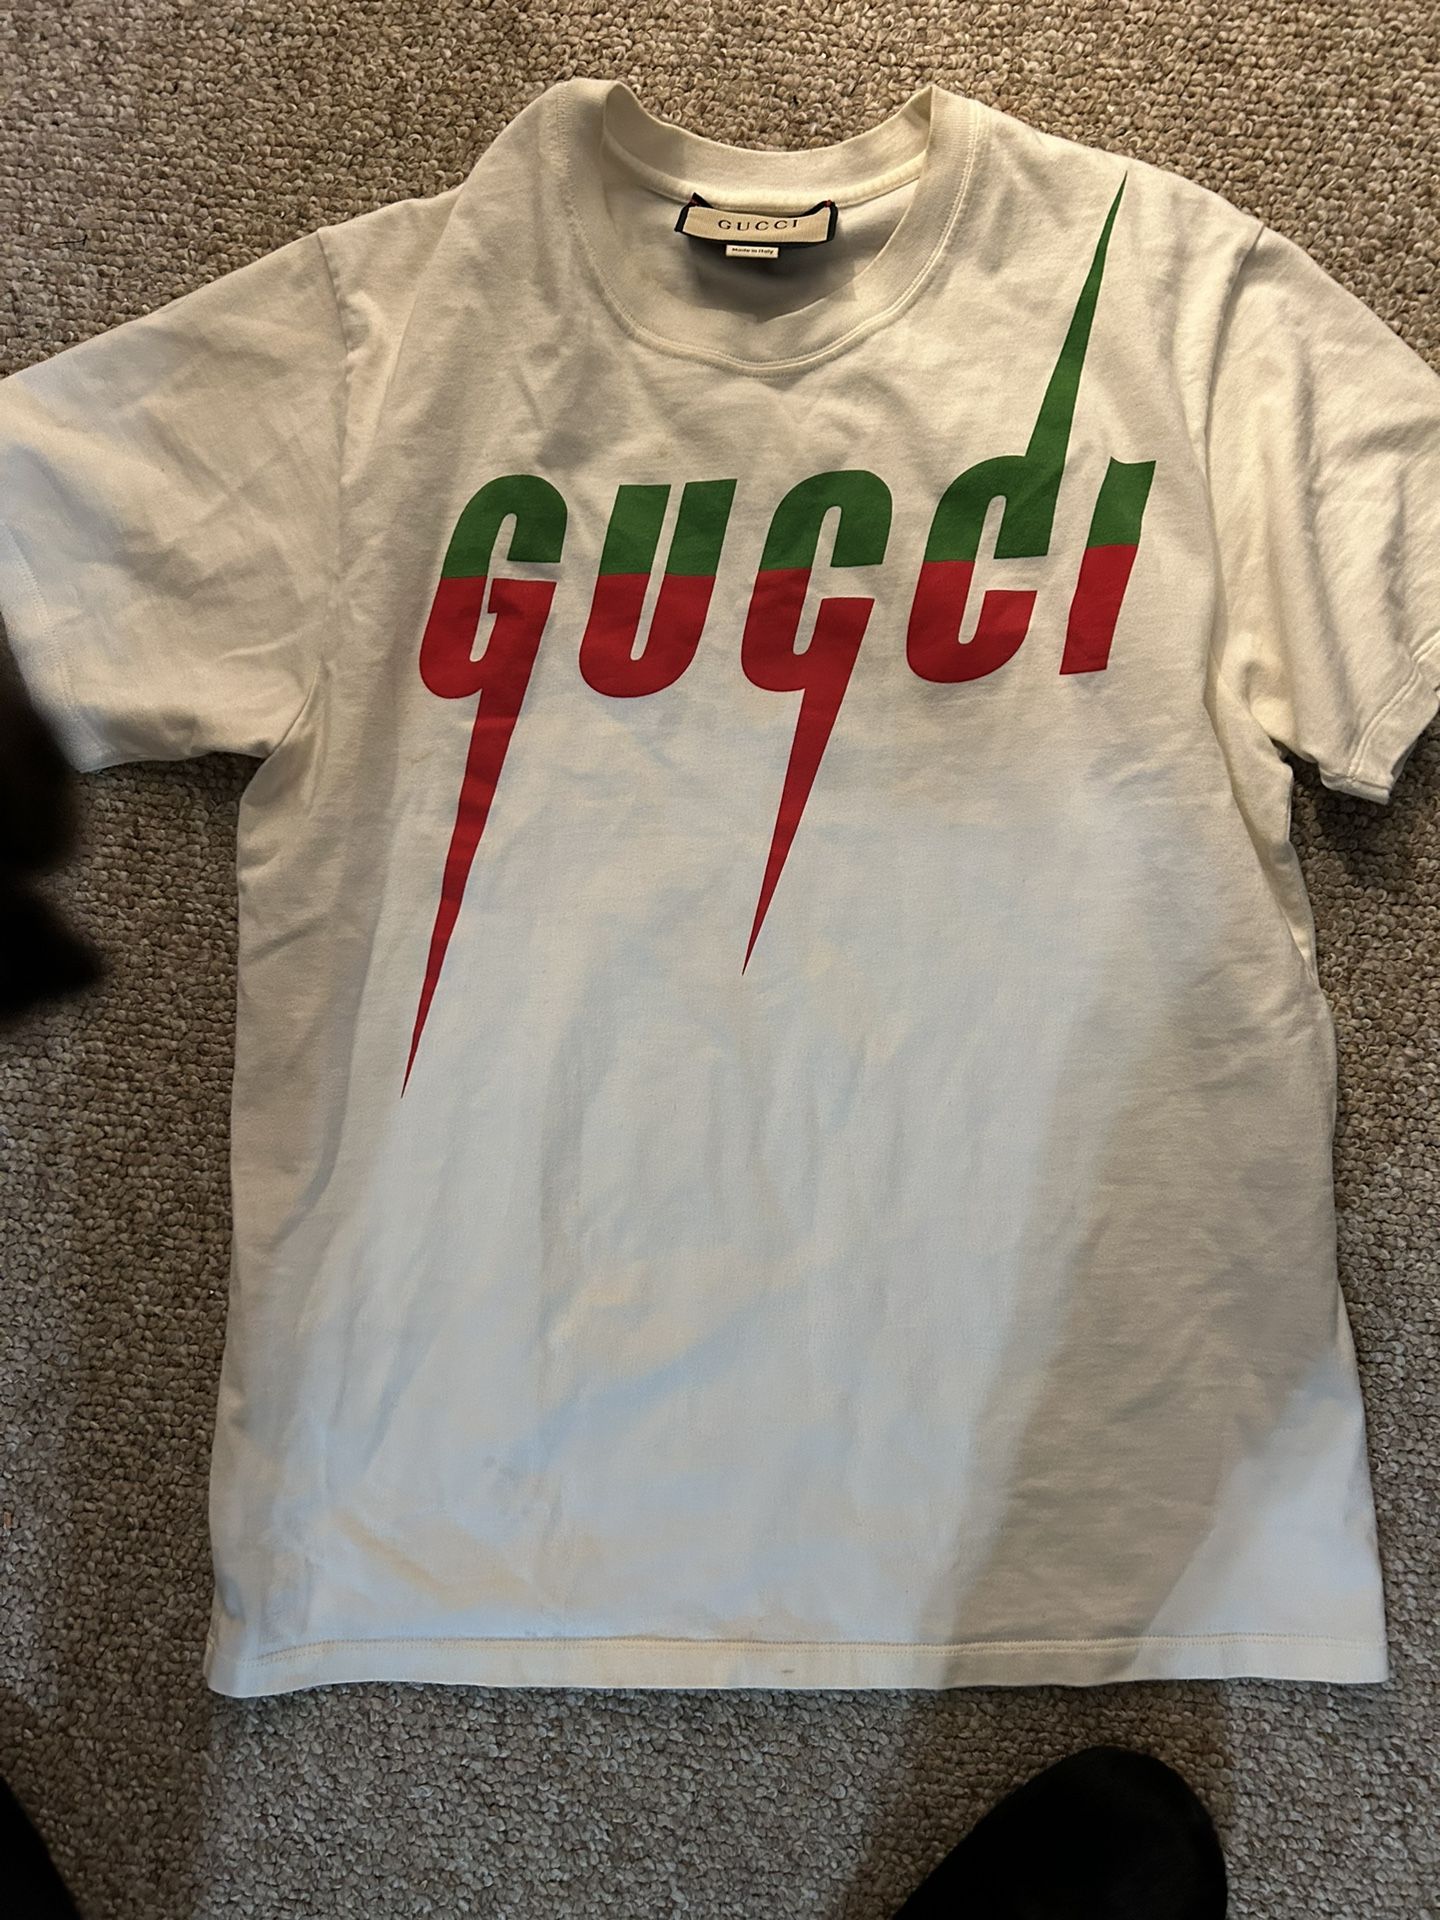 Gucci Shirt & Shoes